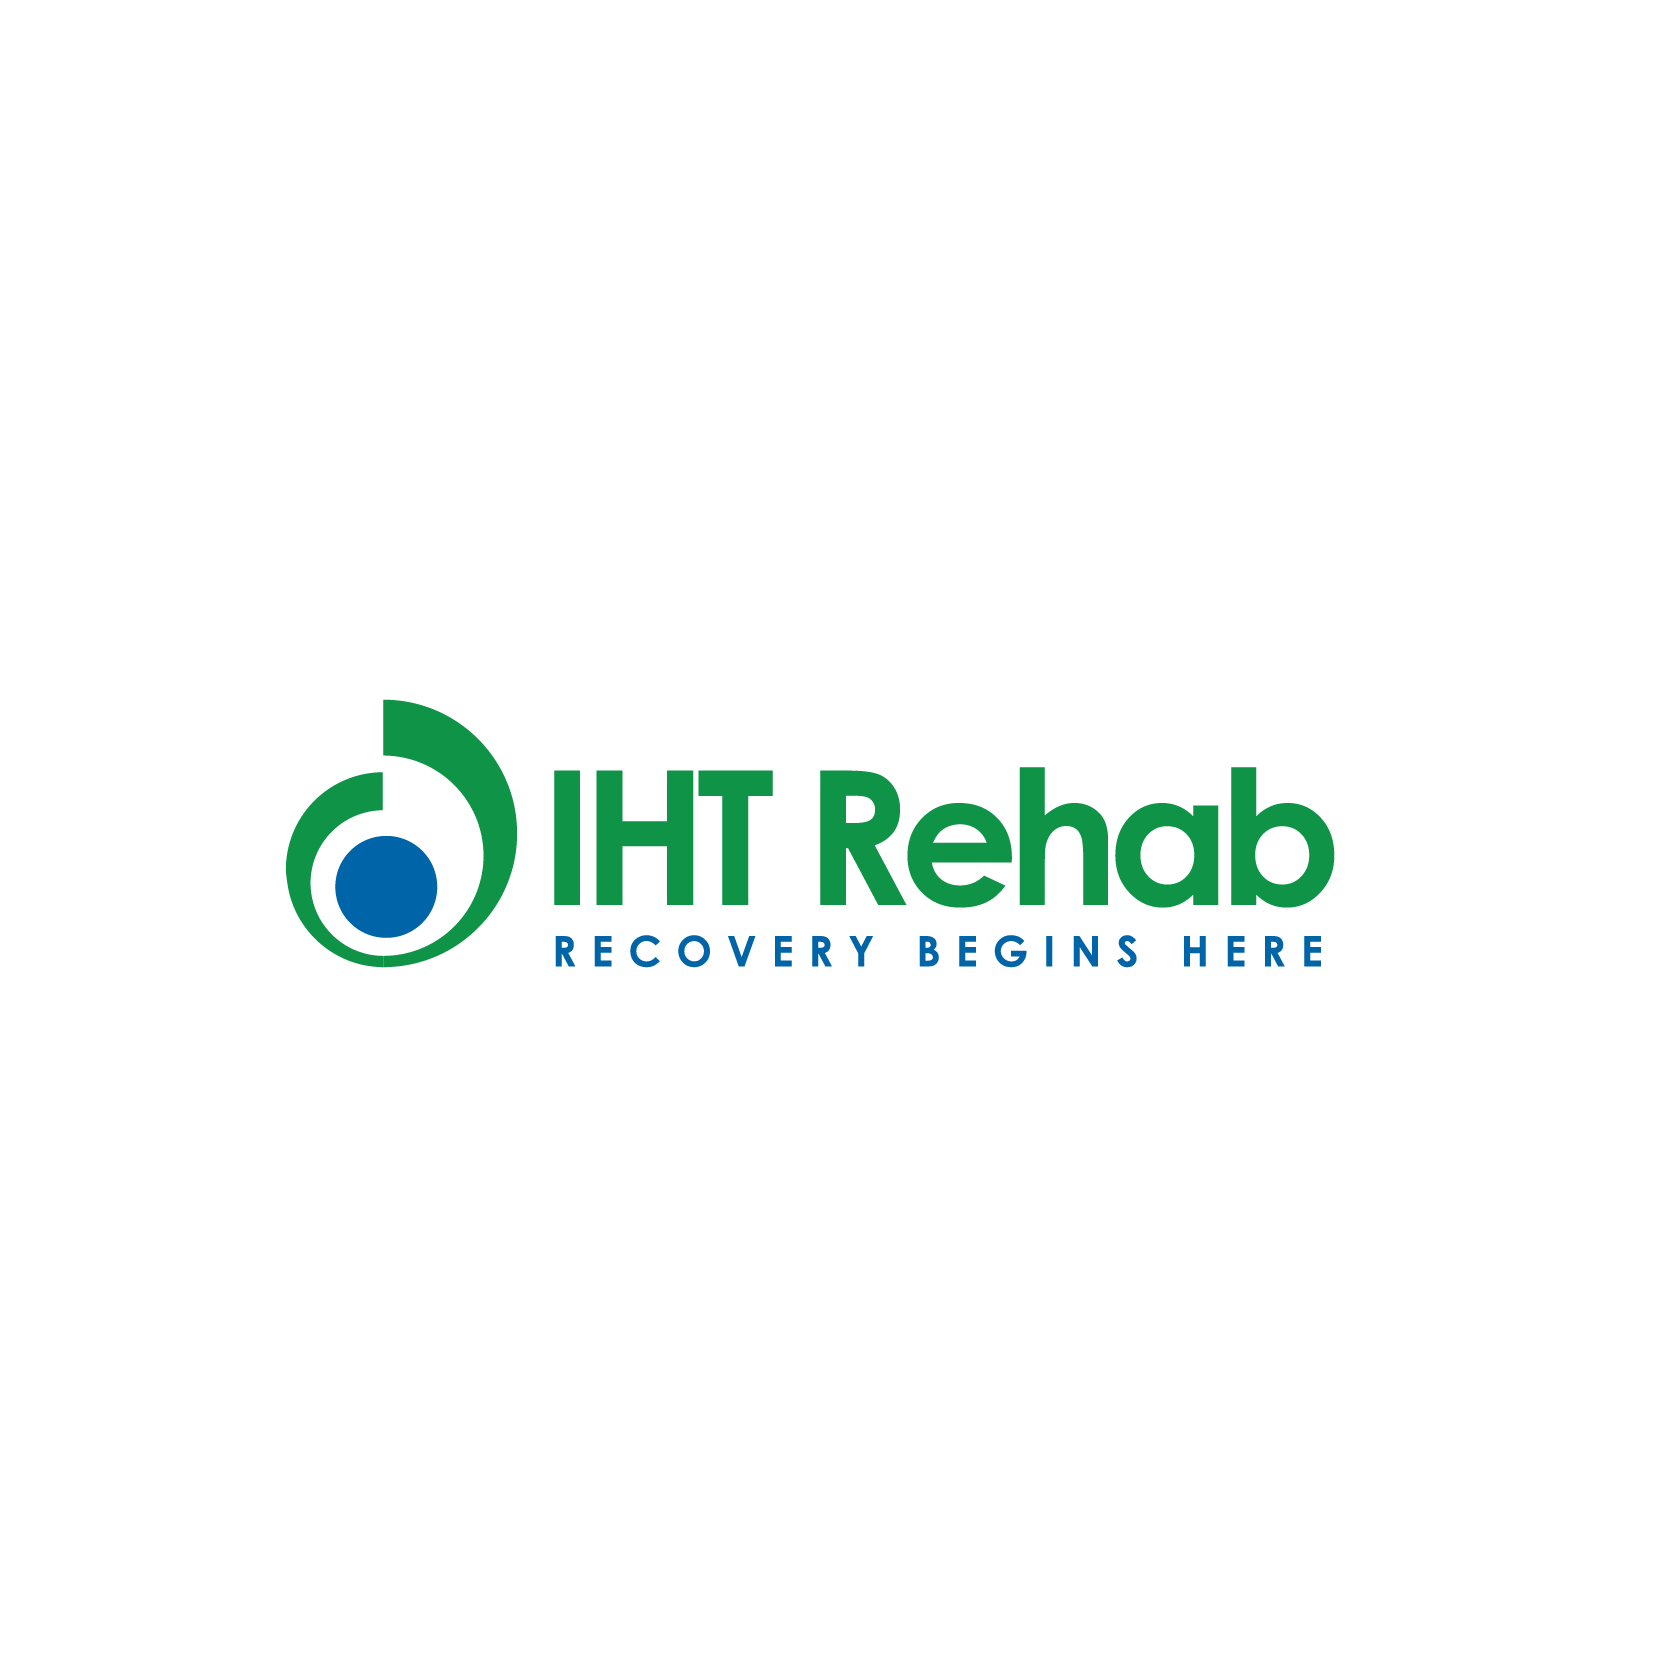 IHT-Rehab-logo